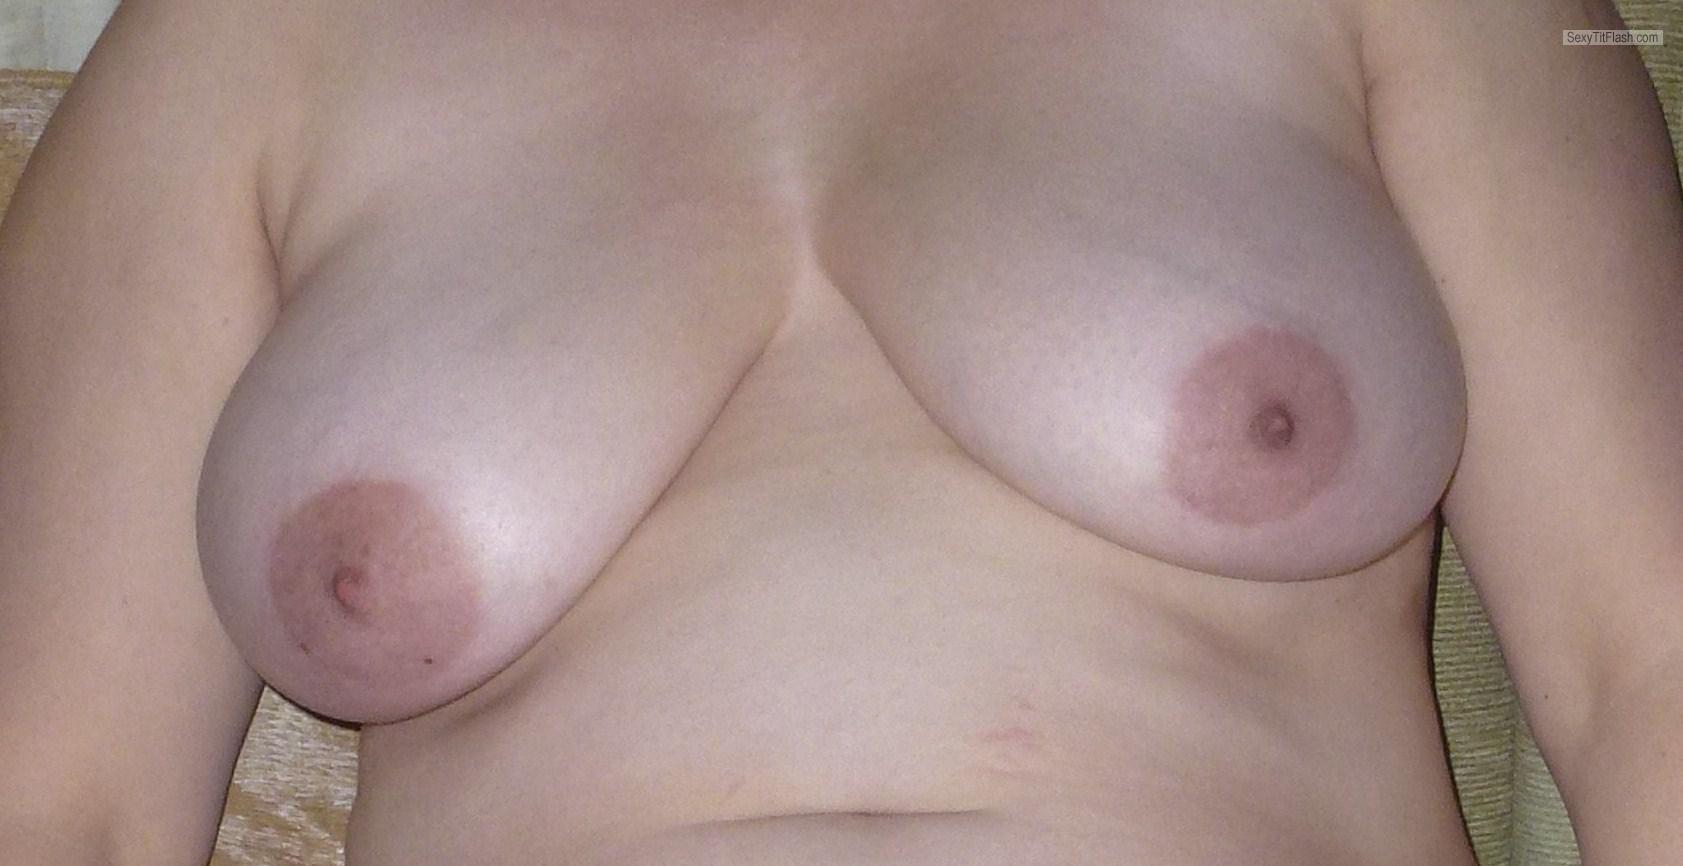 Tit Flash: Wife's Big Tits - BP from United Kingdom